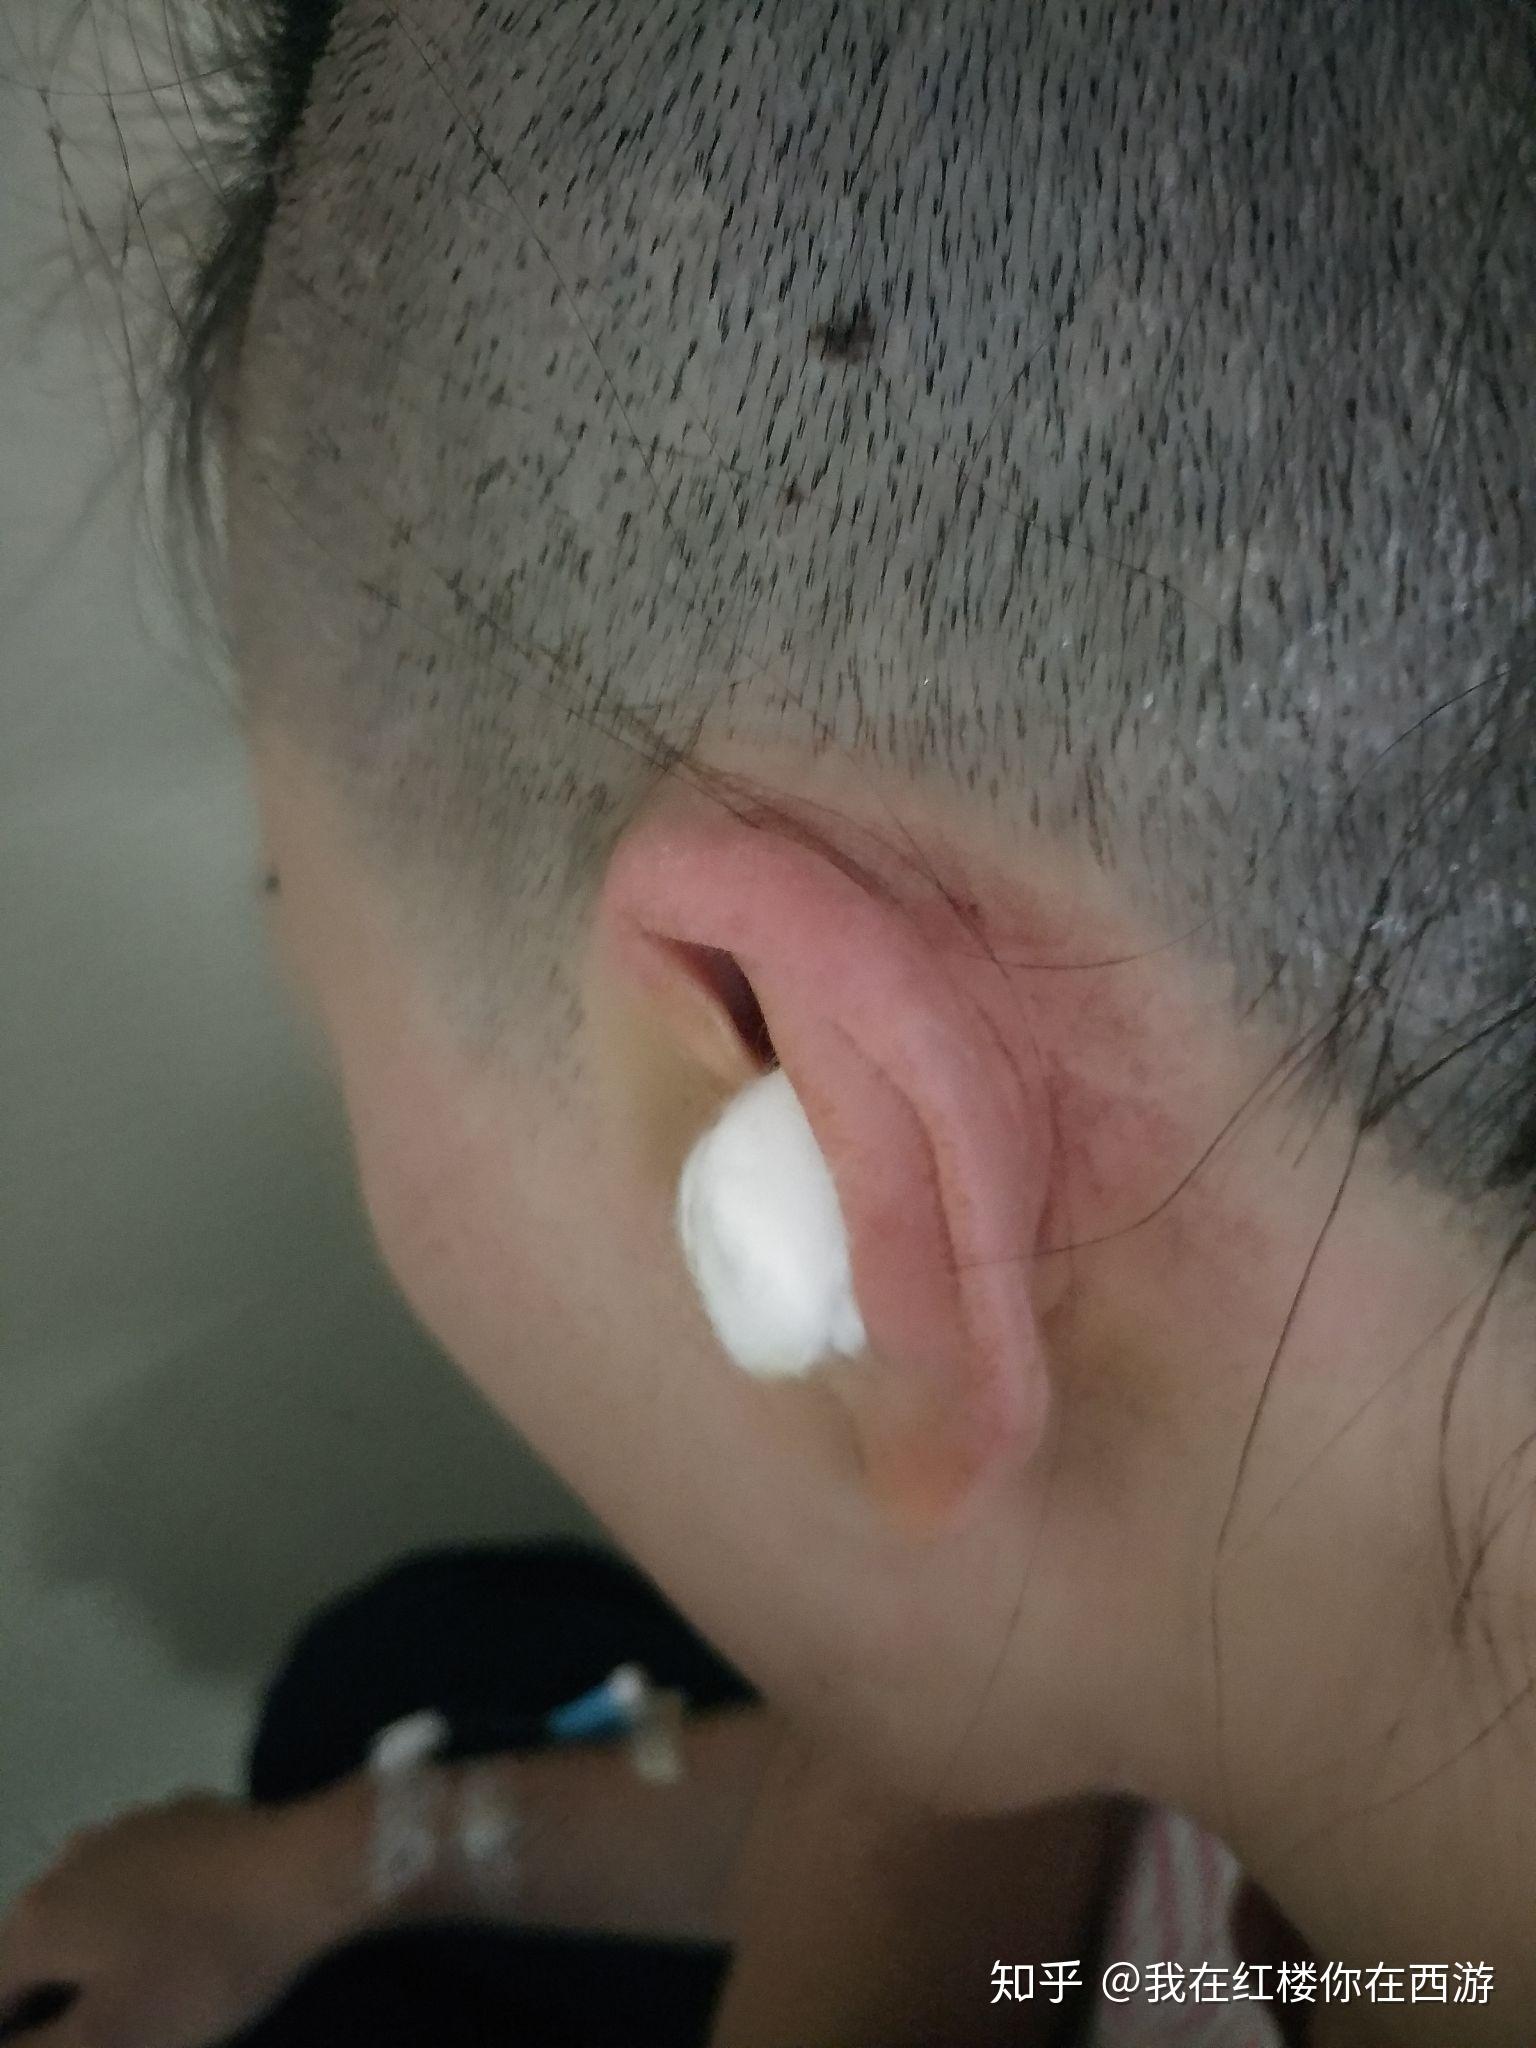 中耳炎引起鼓膜穿孔,做了鼓膜修补术 